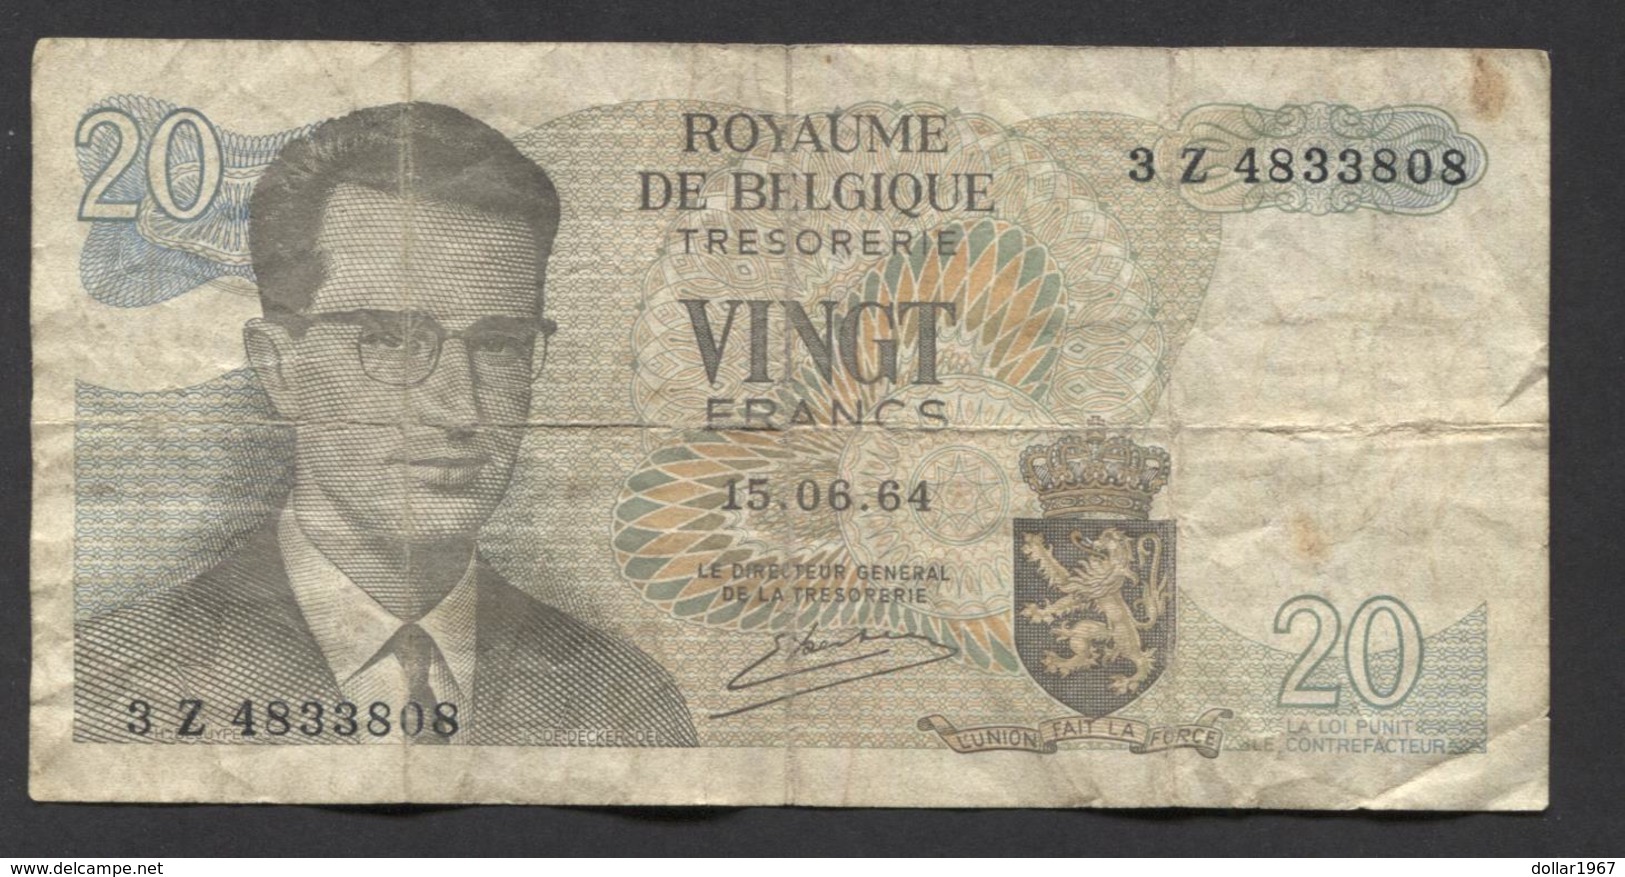 België Belgique Belgium 15 06 1964 -  20 Francs Atomium Baudouin. 3 Z 4833808 - 20 Franchi